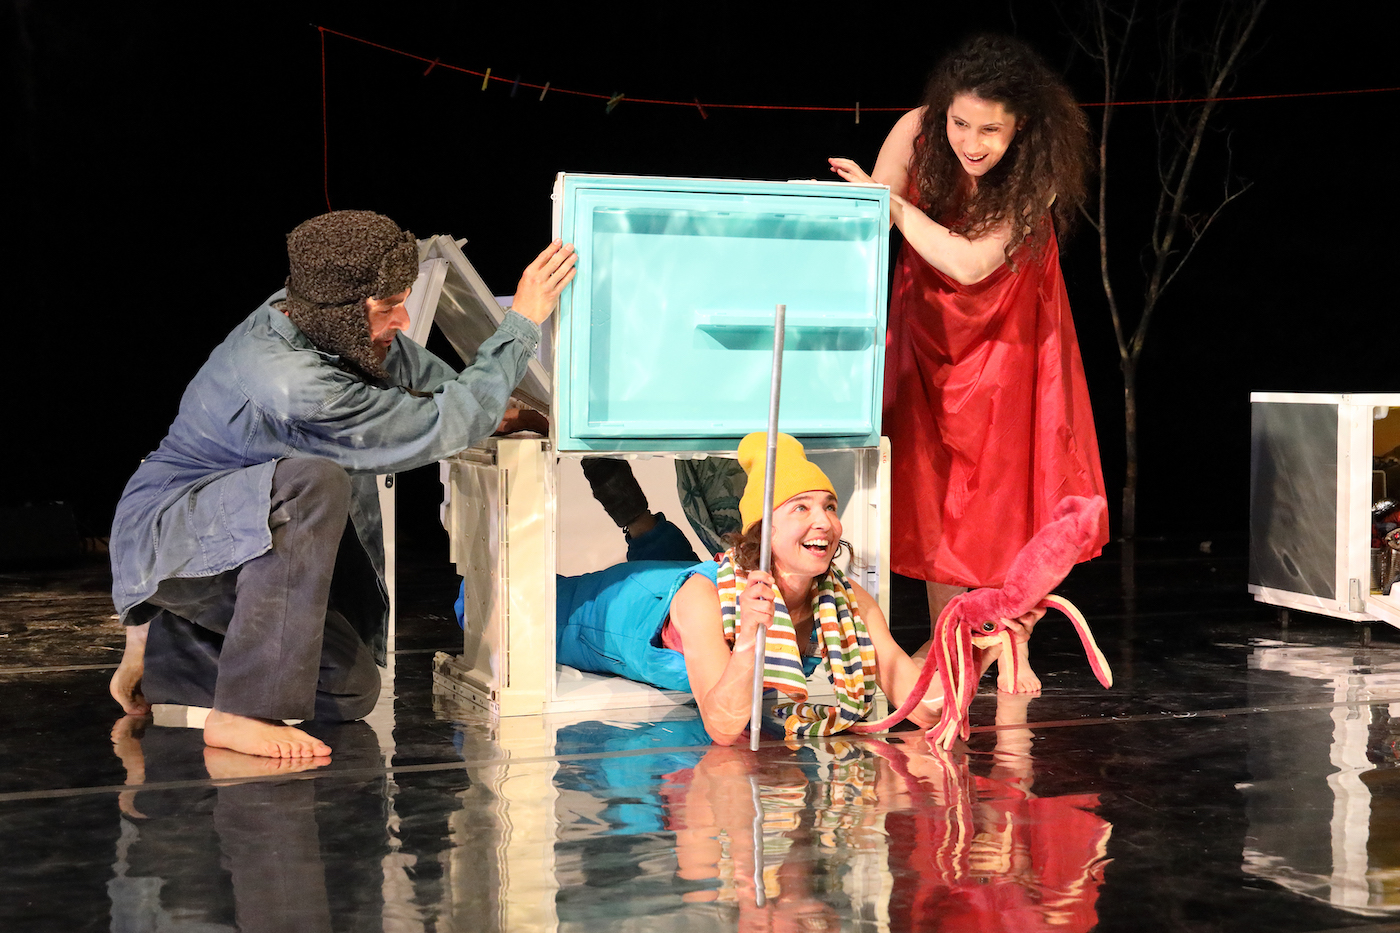 Das Theaterstück für Kinder in München Kind der Seejungfrauvkönnt ihr im im Bayrischen Staatstheater sehen // HIMBEER